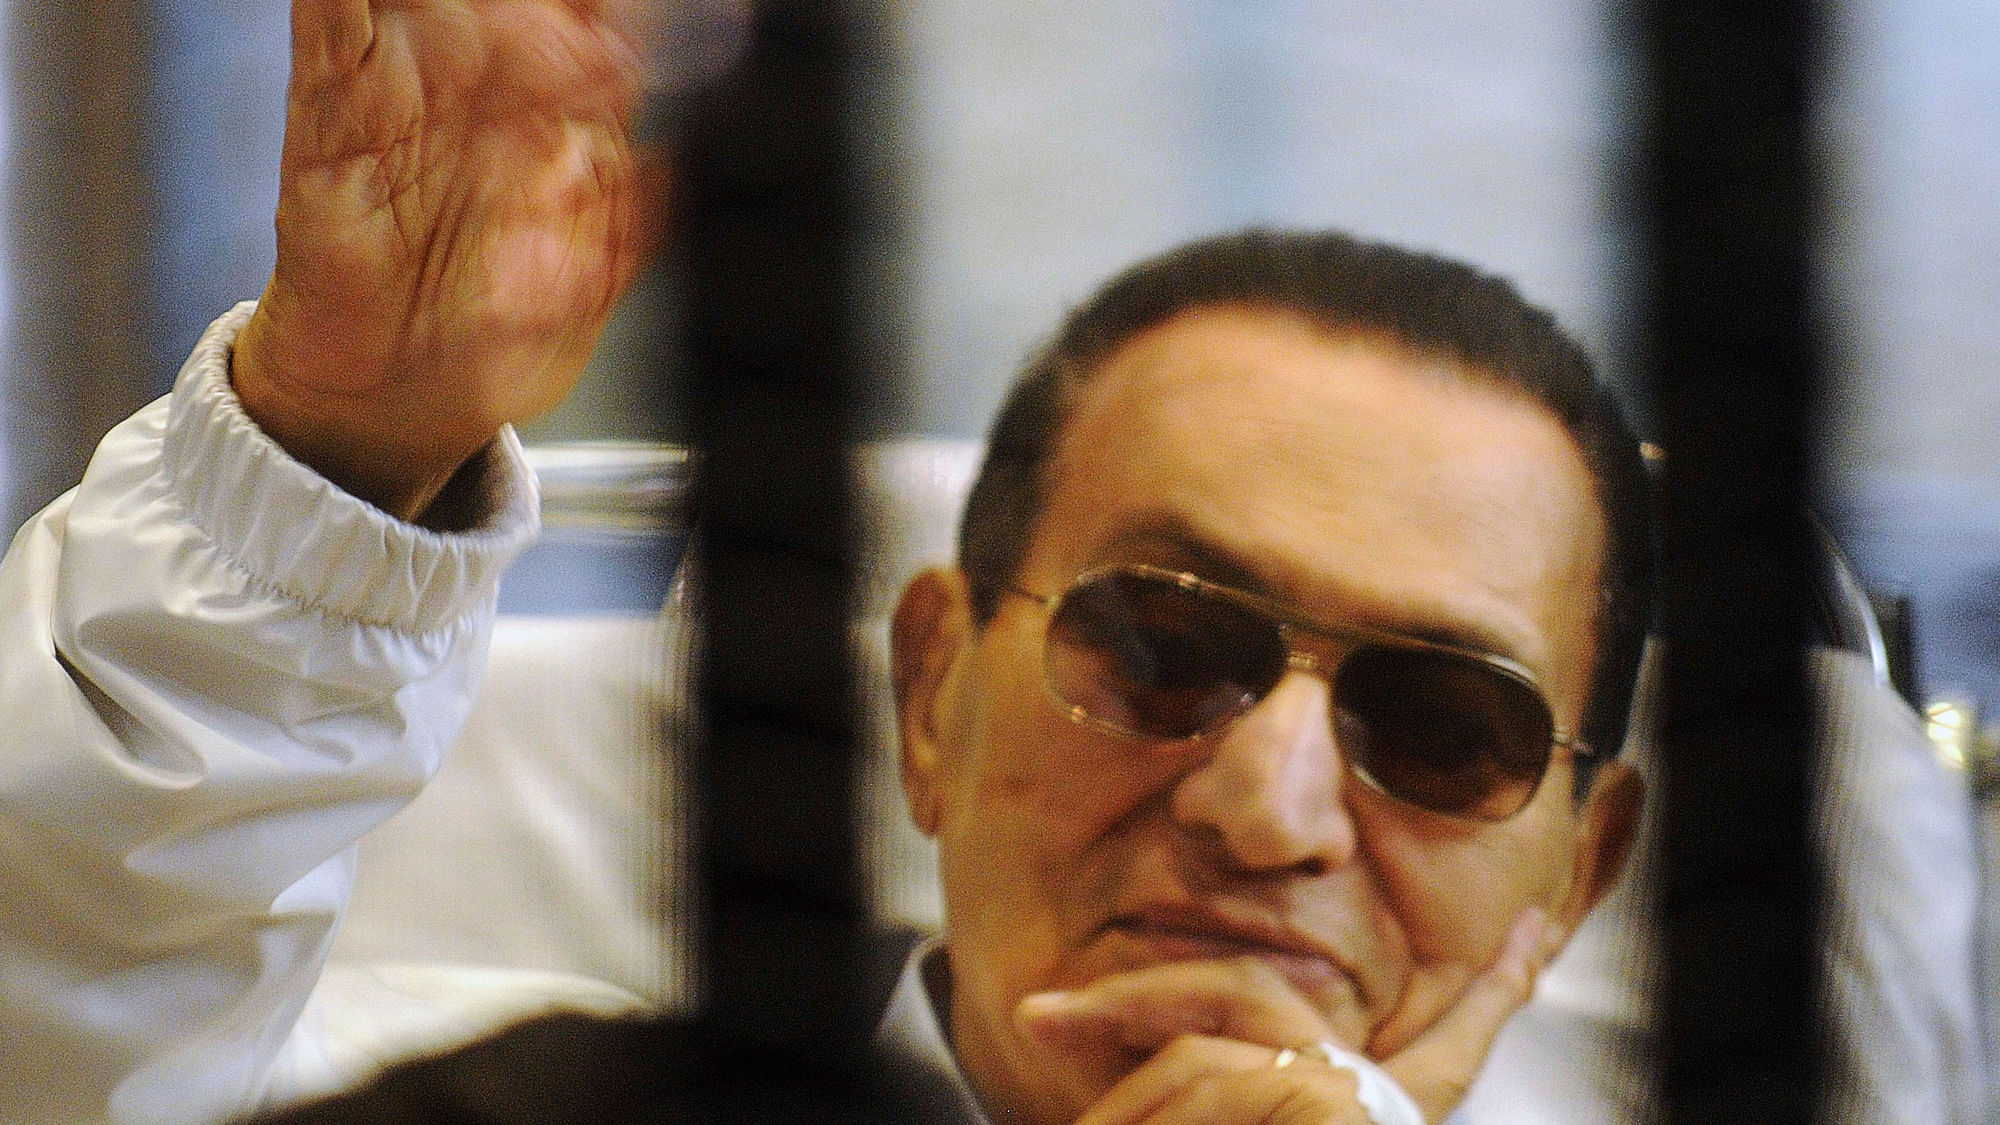 Hosni Mubarak during earlier trials. (Photo: Reuters)